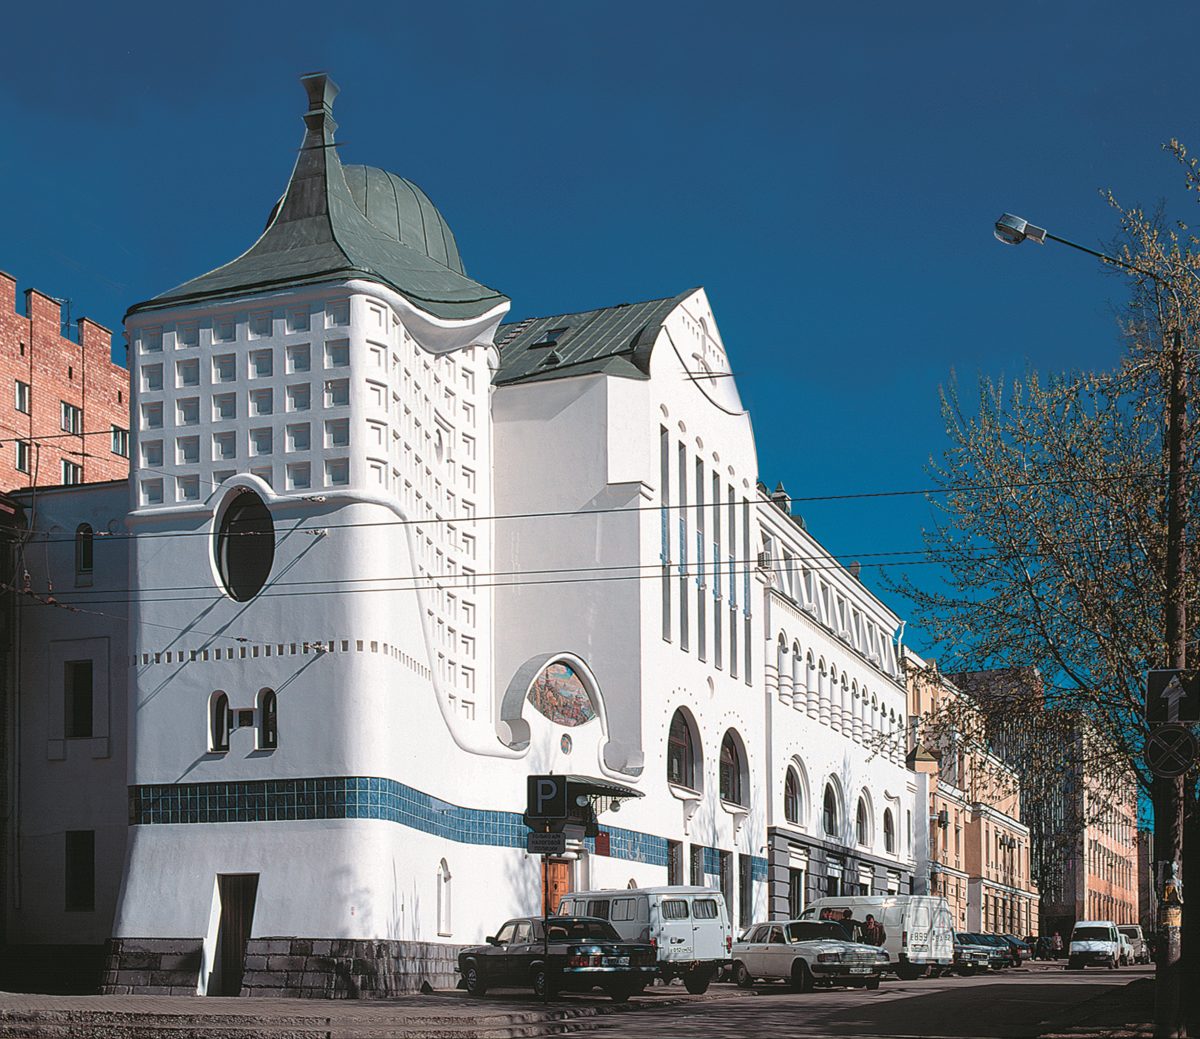 Современное административное здание напомнит другую достопримечательность Нижнего - бывший Крестьянский поземельный банк, построенный в 1916 году и ставший потом Дворцом детского творчества.